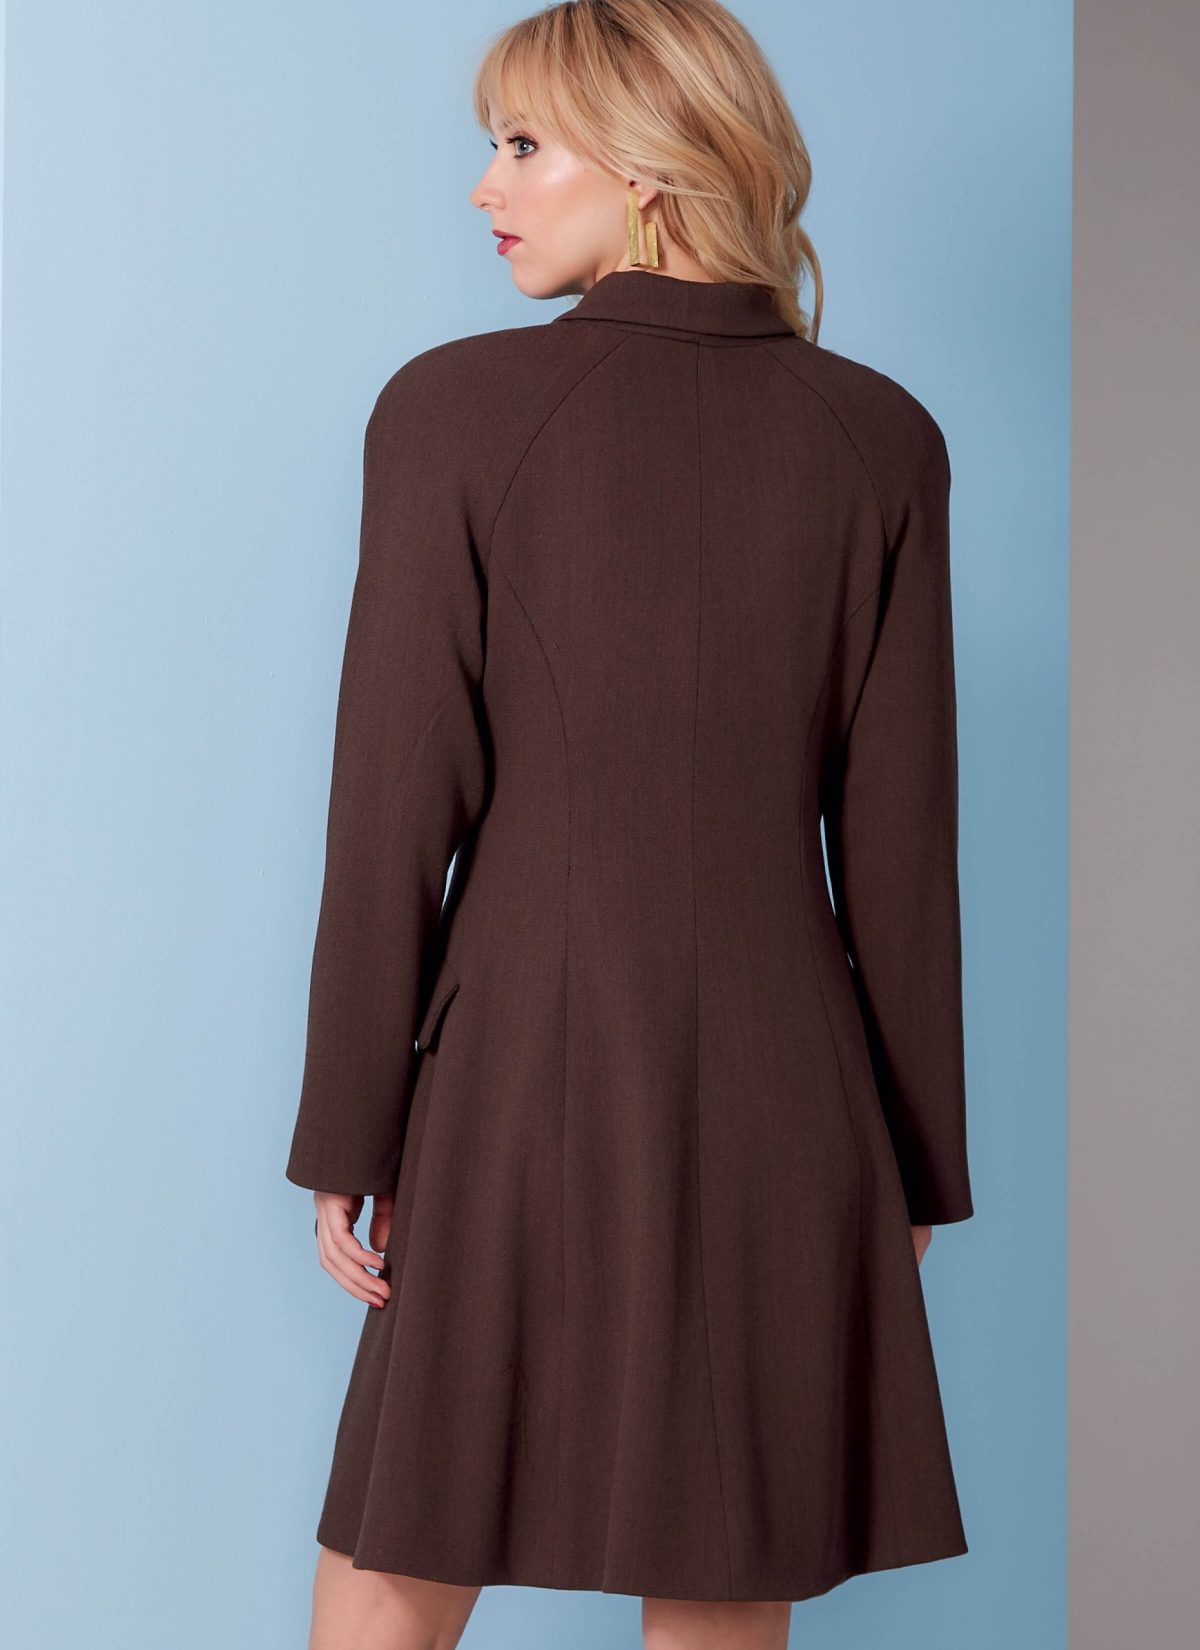 Vogue Pattern V1836 Misses' Coat